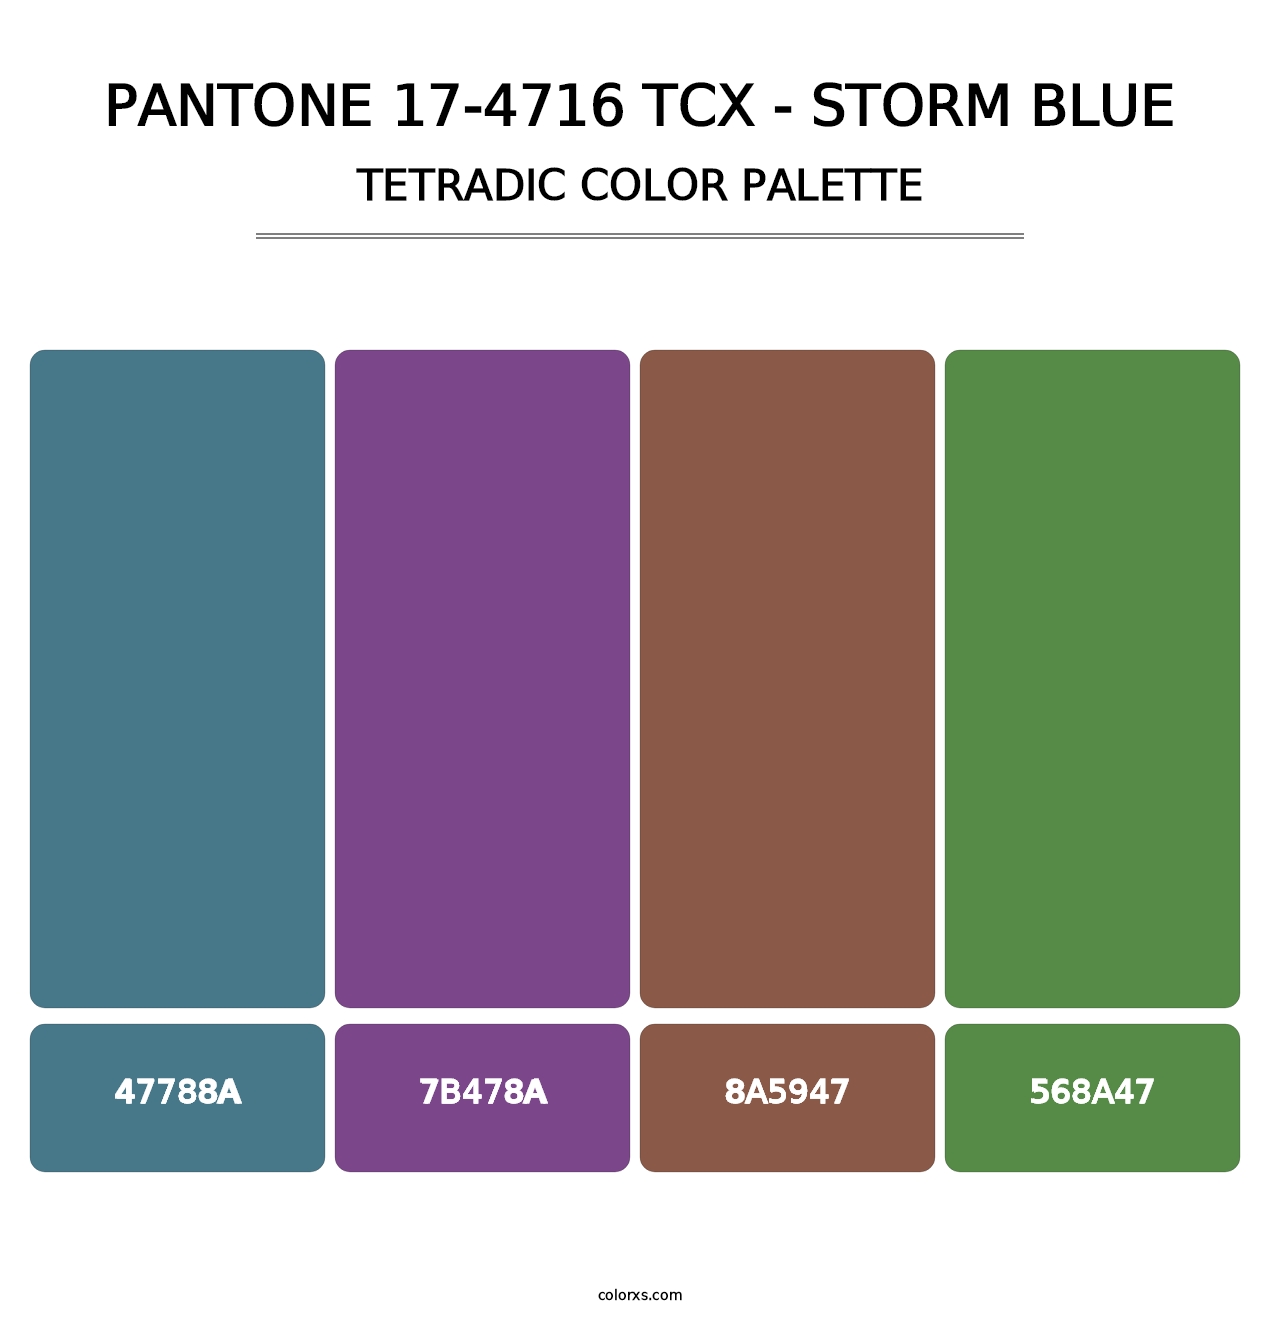 PANTONE 17-4716 TCX - Storm Blue - Tetradic Color Palette